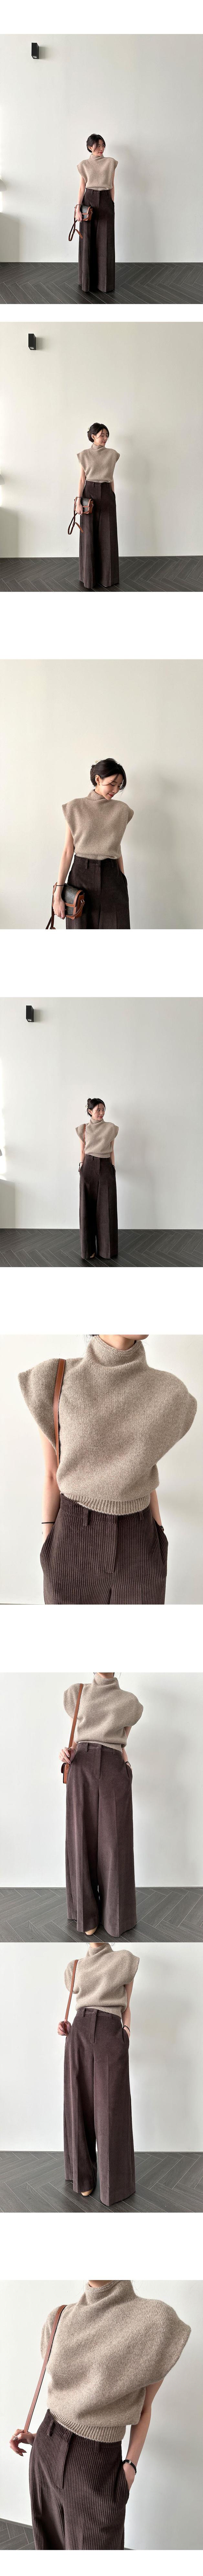 High Collar Loose All-matching Sleeveless Knitwear Sweater Top Women